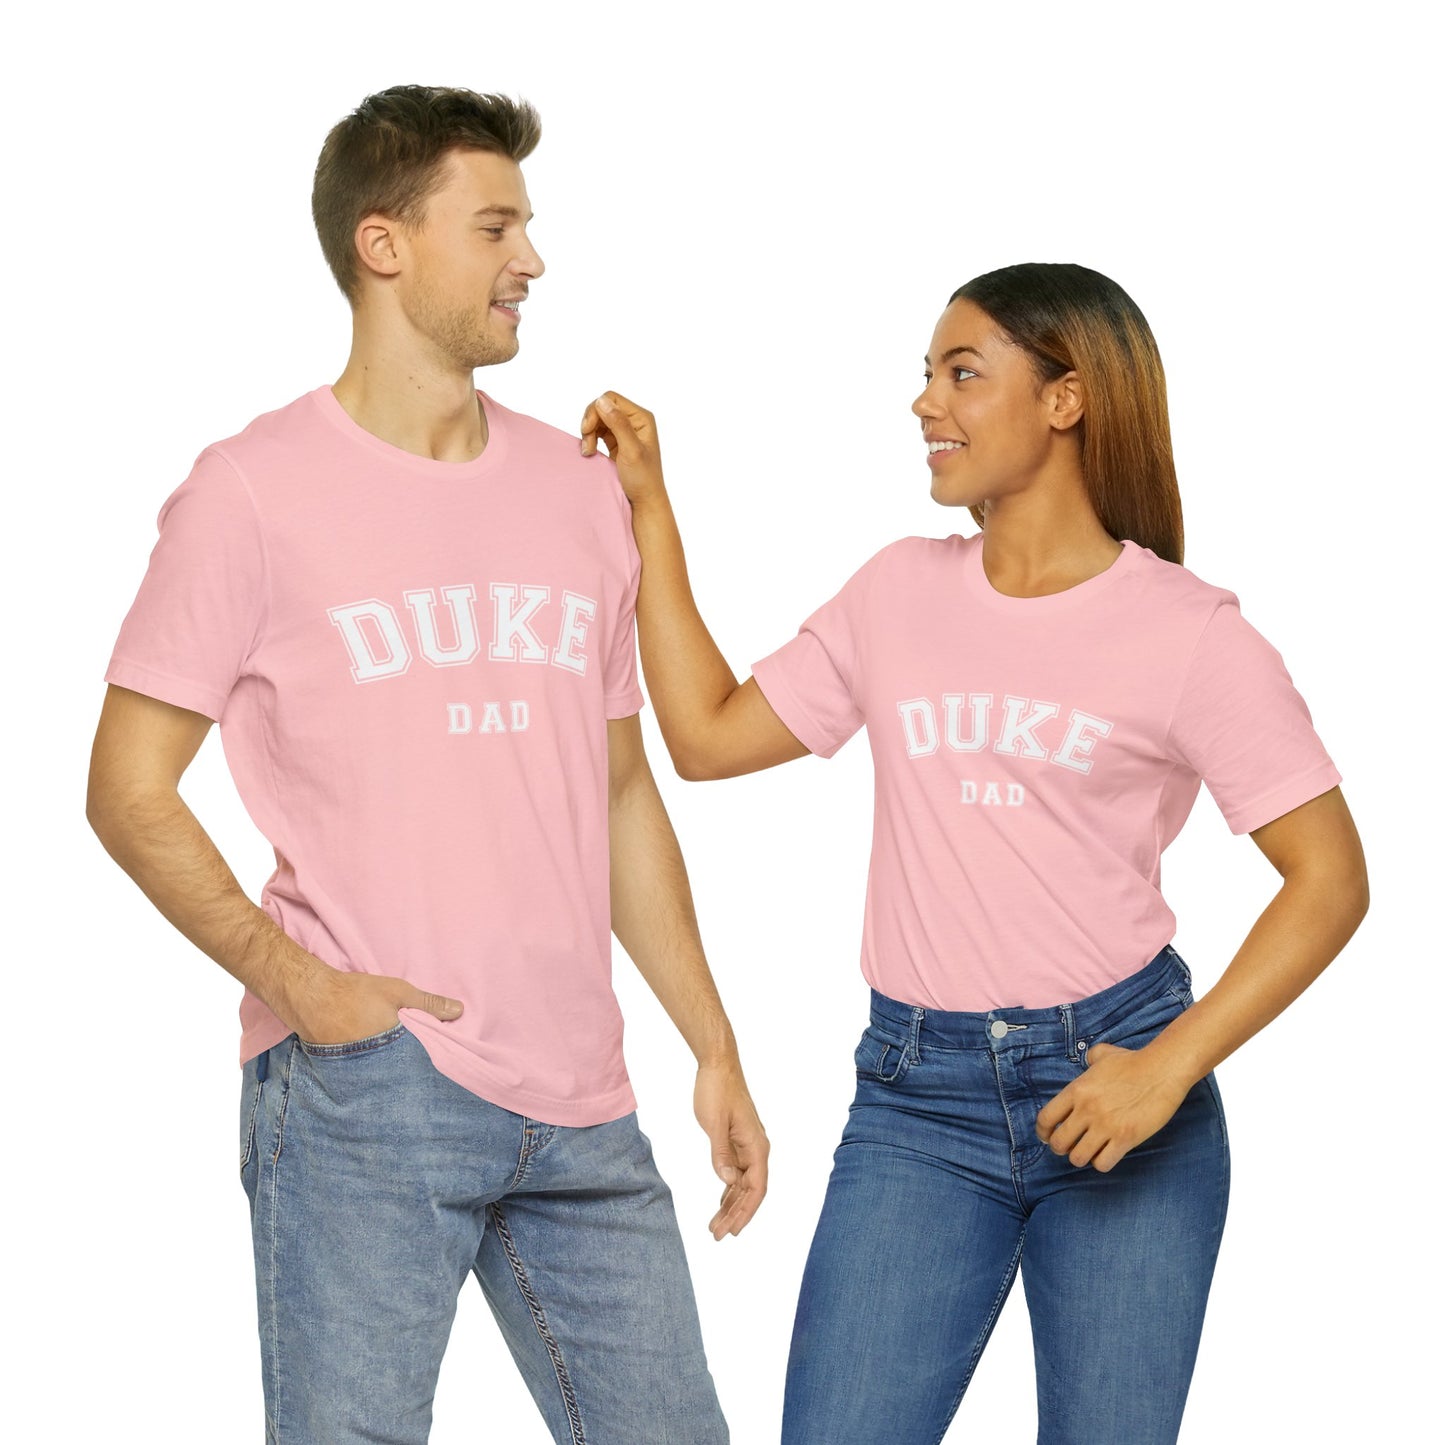 DUKE Dad, parent shirt- Adult, Regular Fit, Soft Cotton, T-shirt